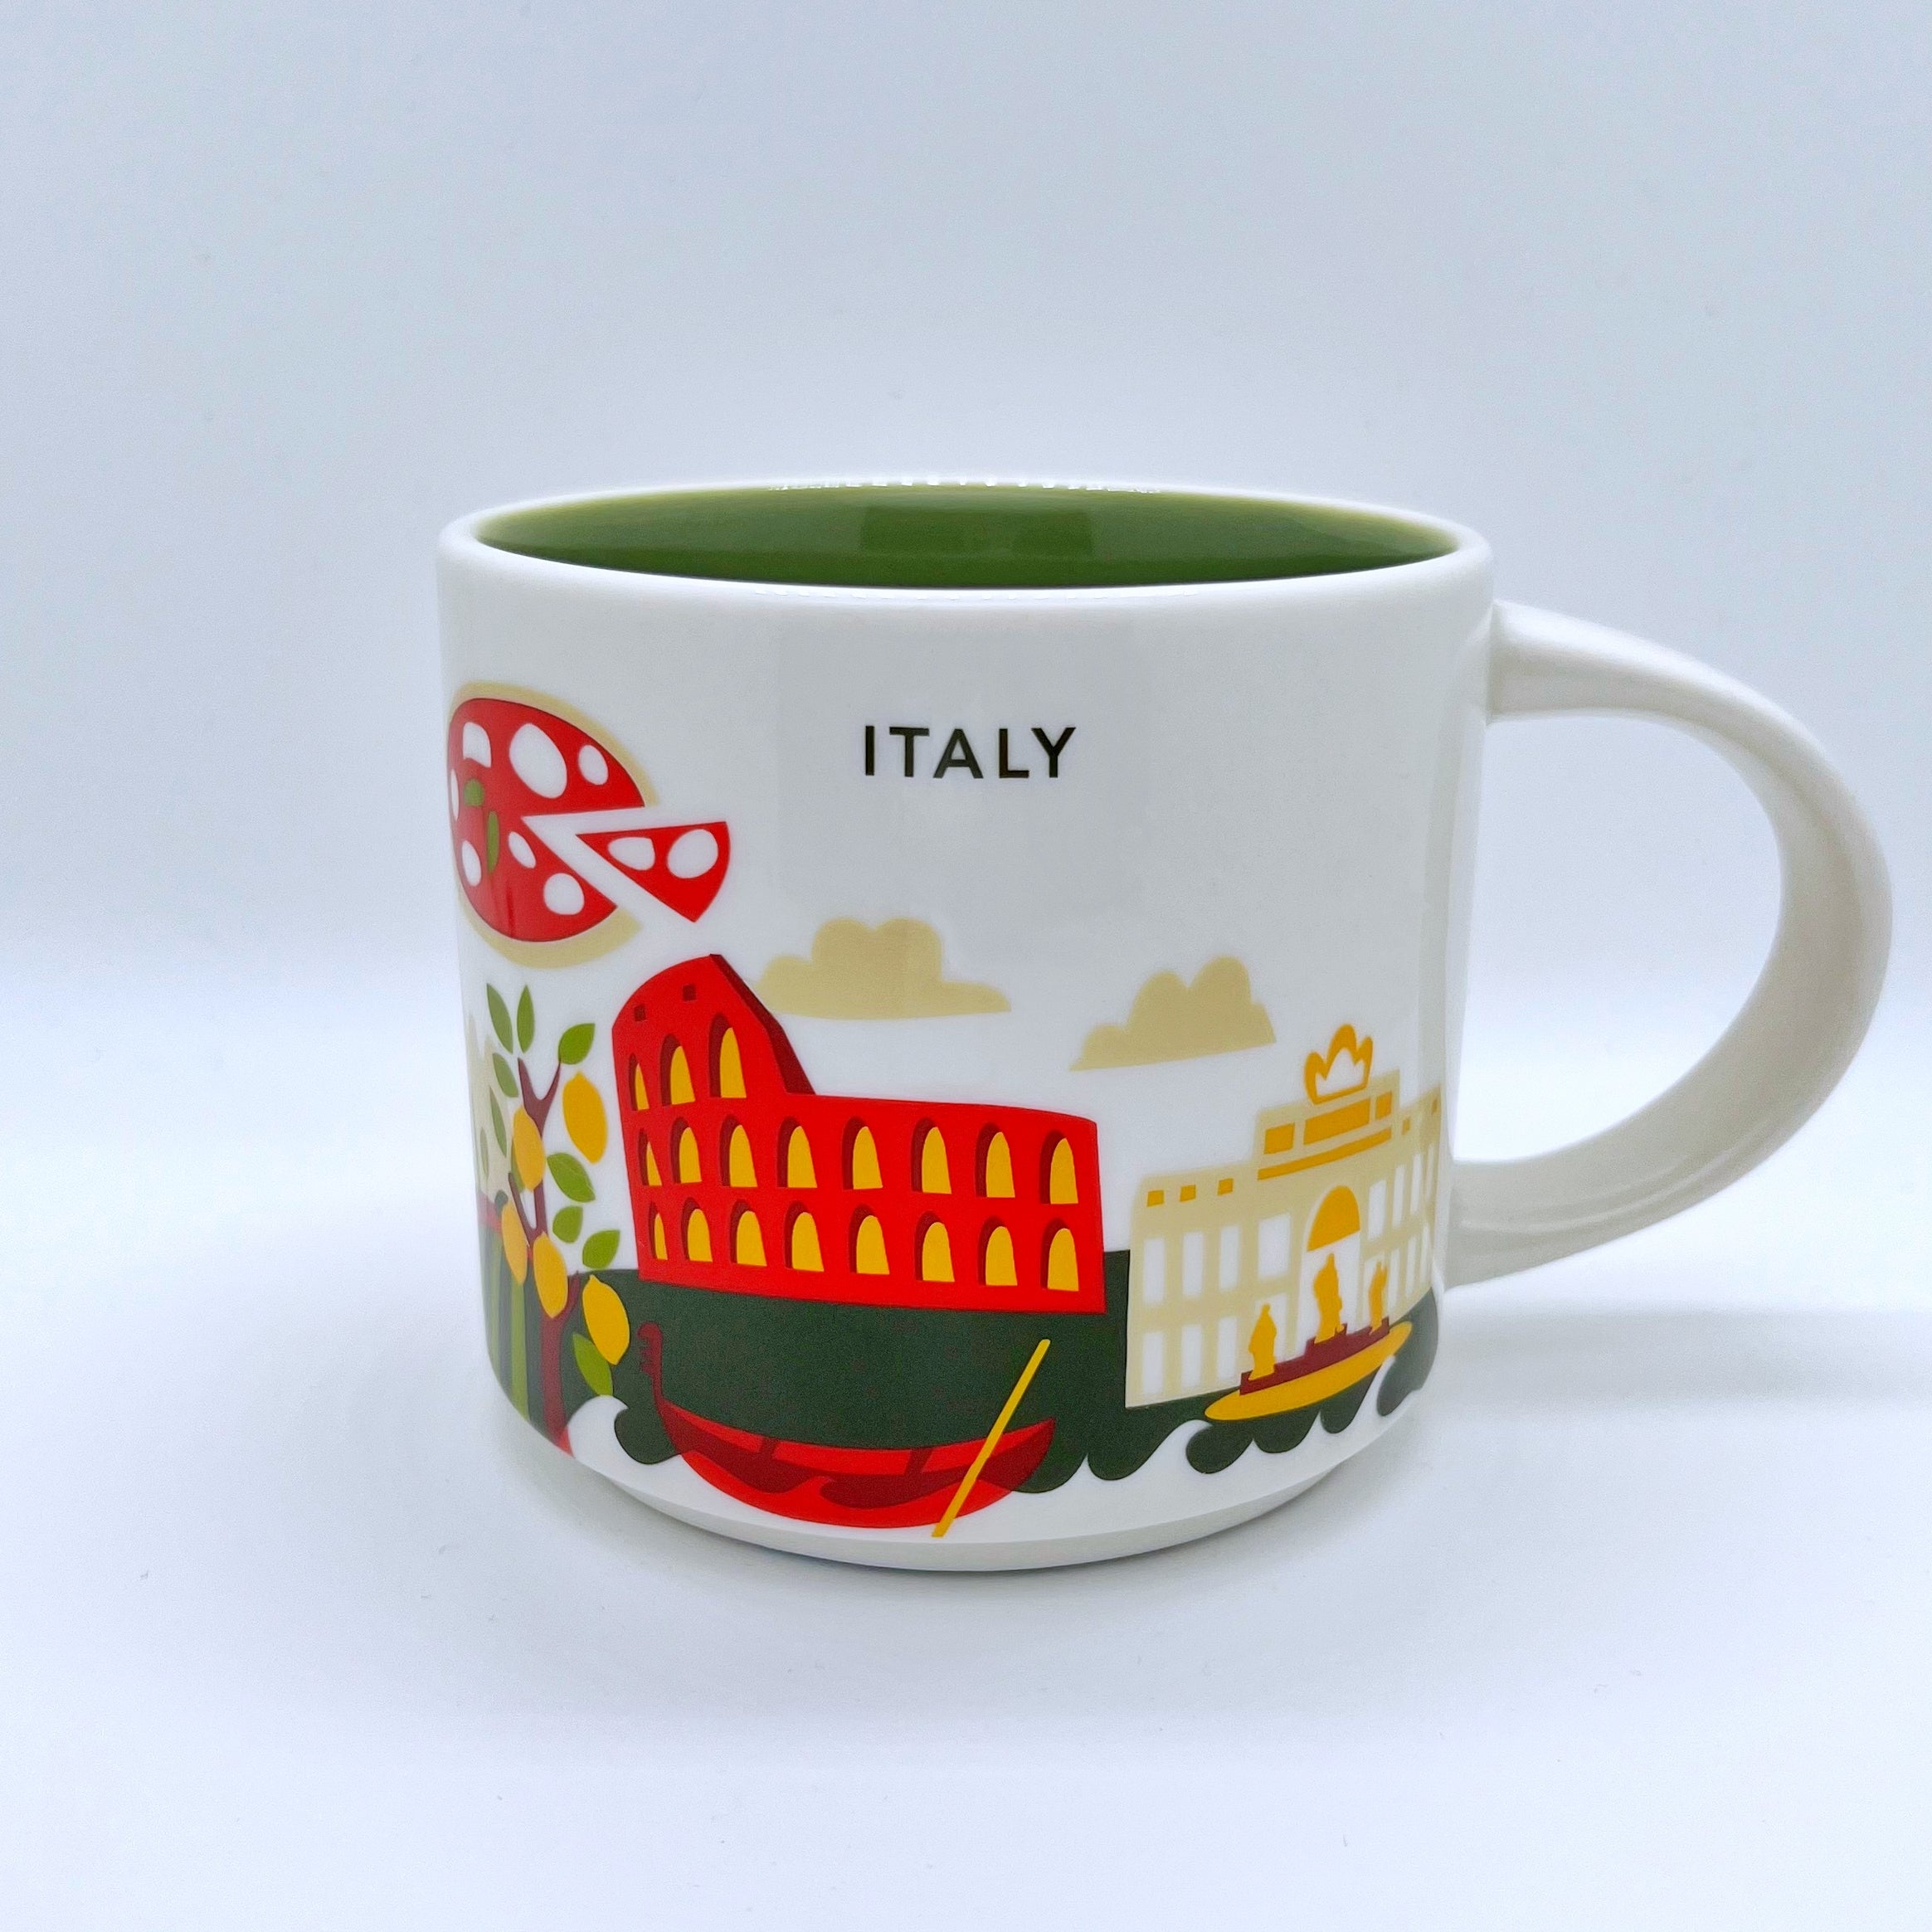 Kaffee Tee oder Cappuccino Tasse von Starbucks mit gemalten Bildern aus dem Land Italien